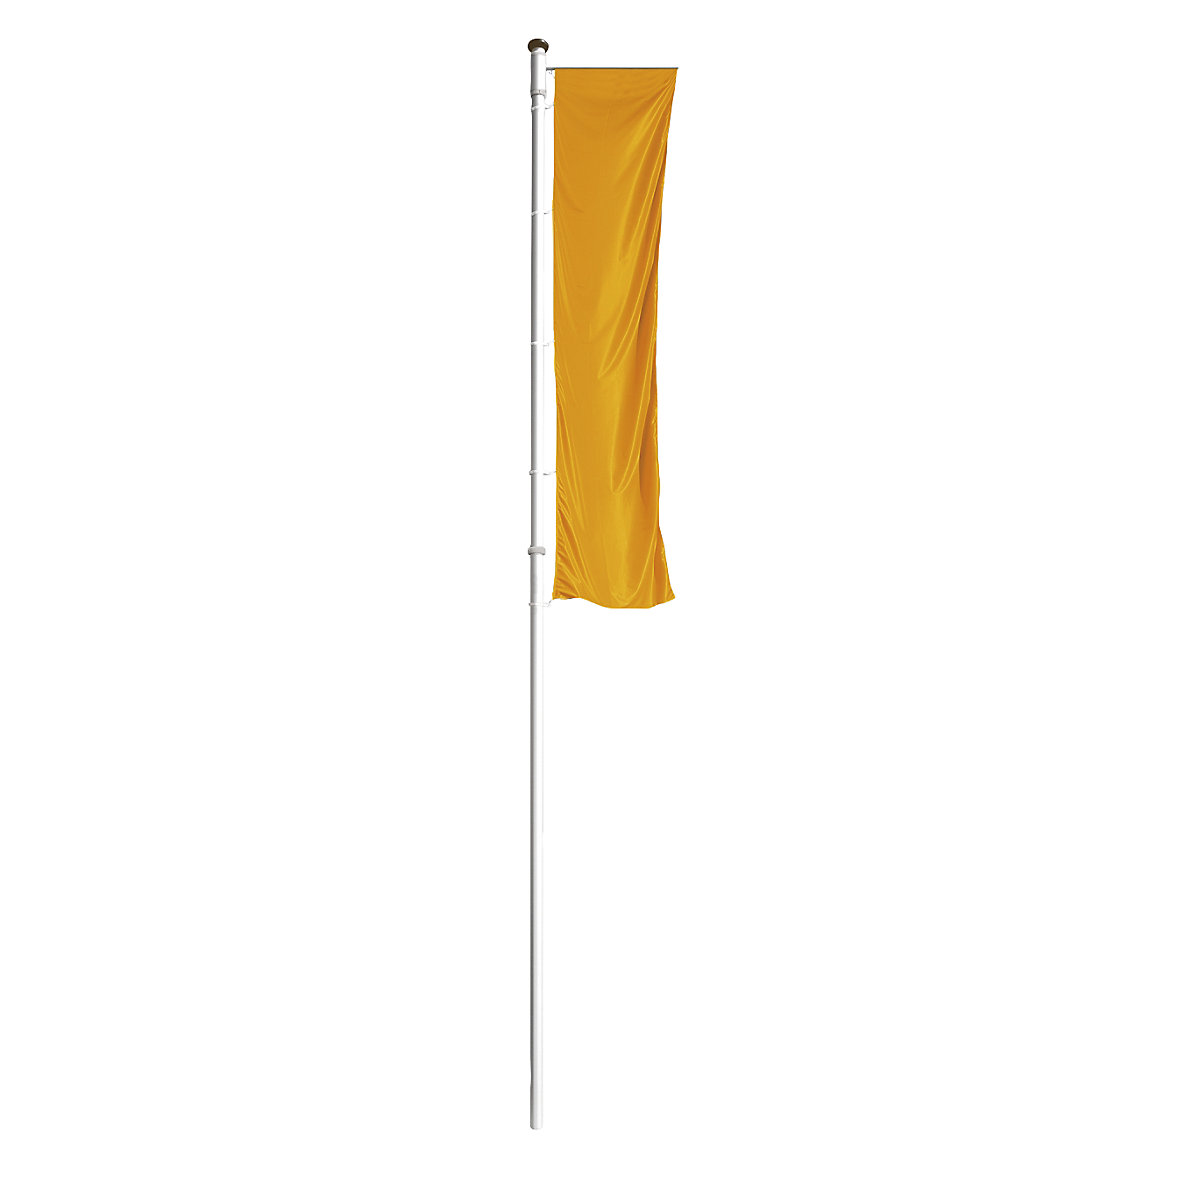 PRESTIGE aluminium flag pole – Mannus